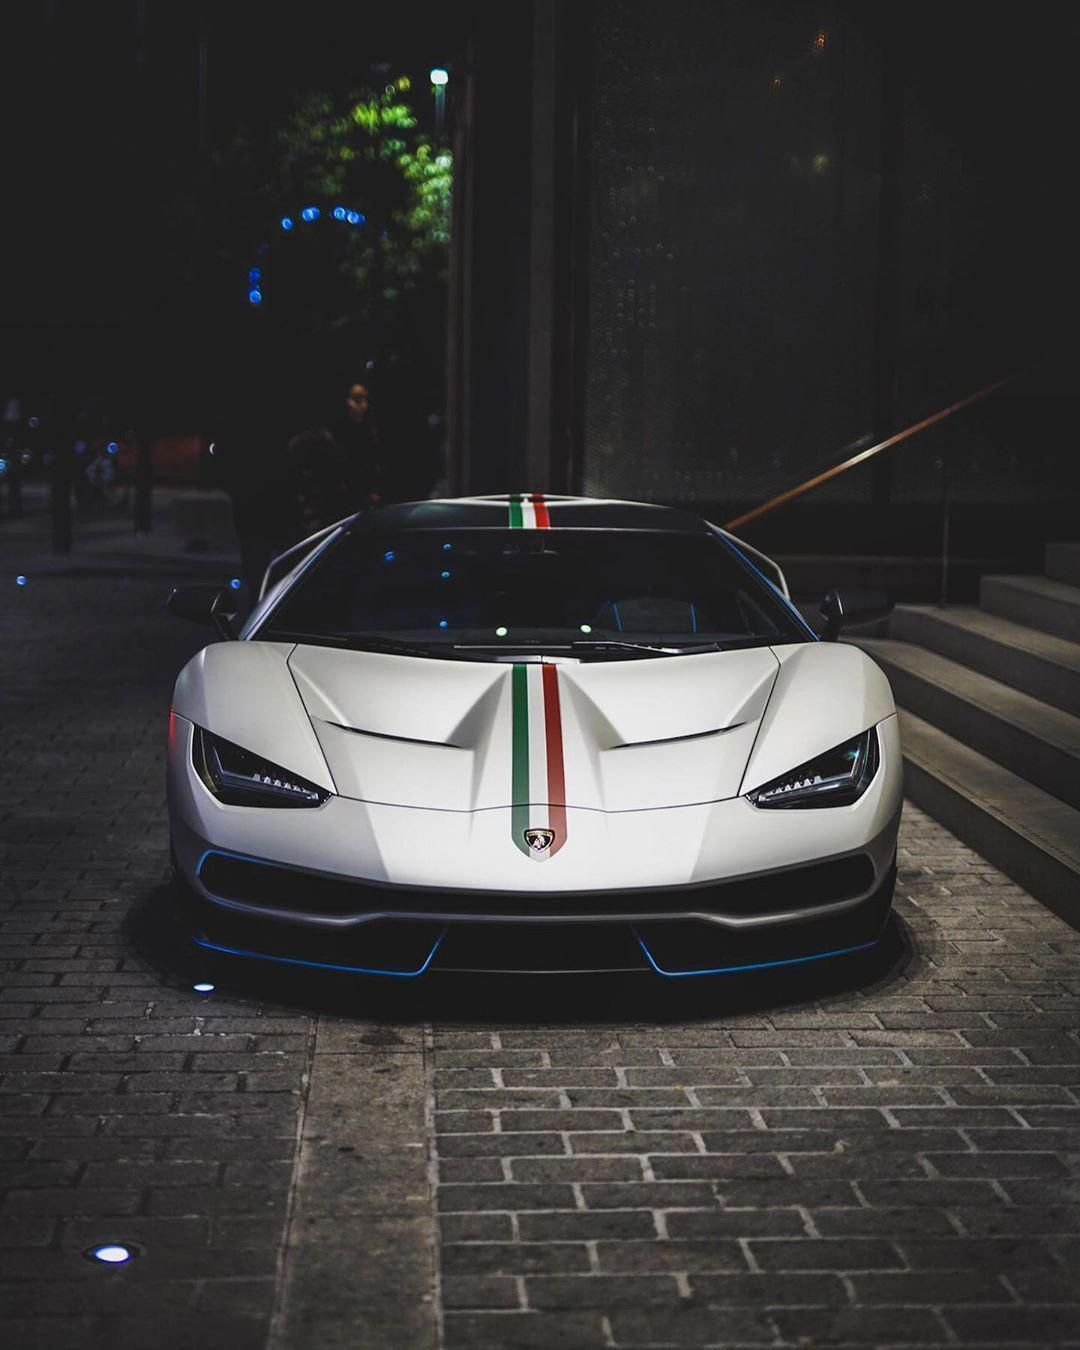 Lamborghini Centenario stare down